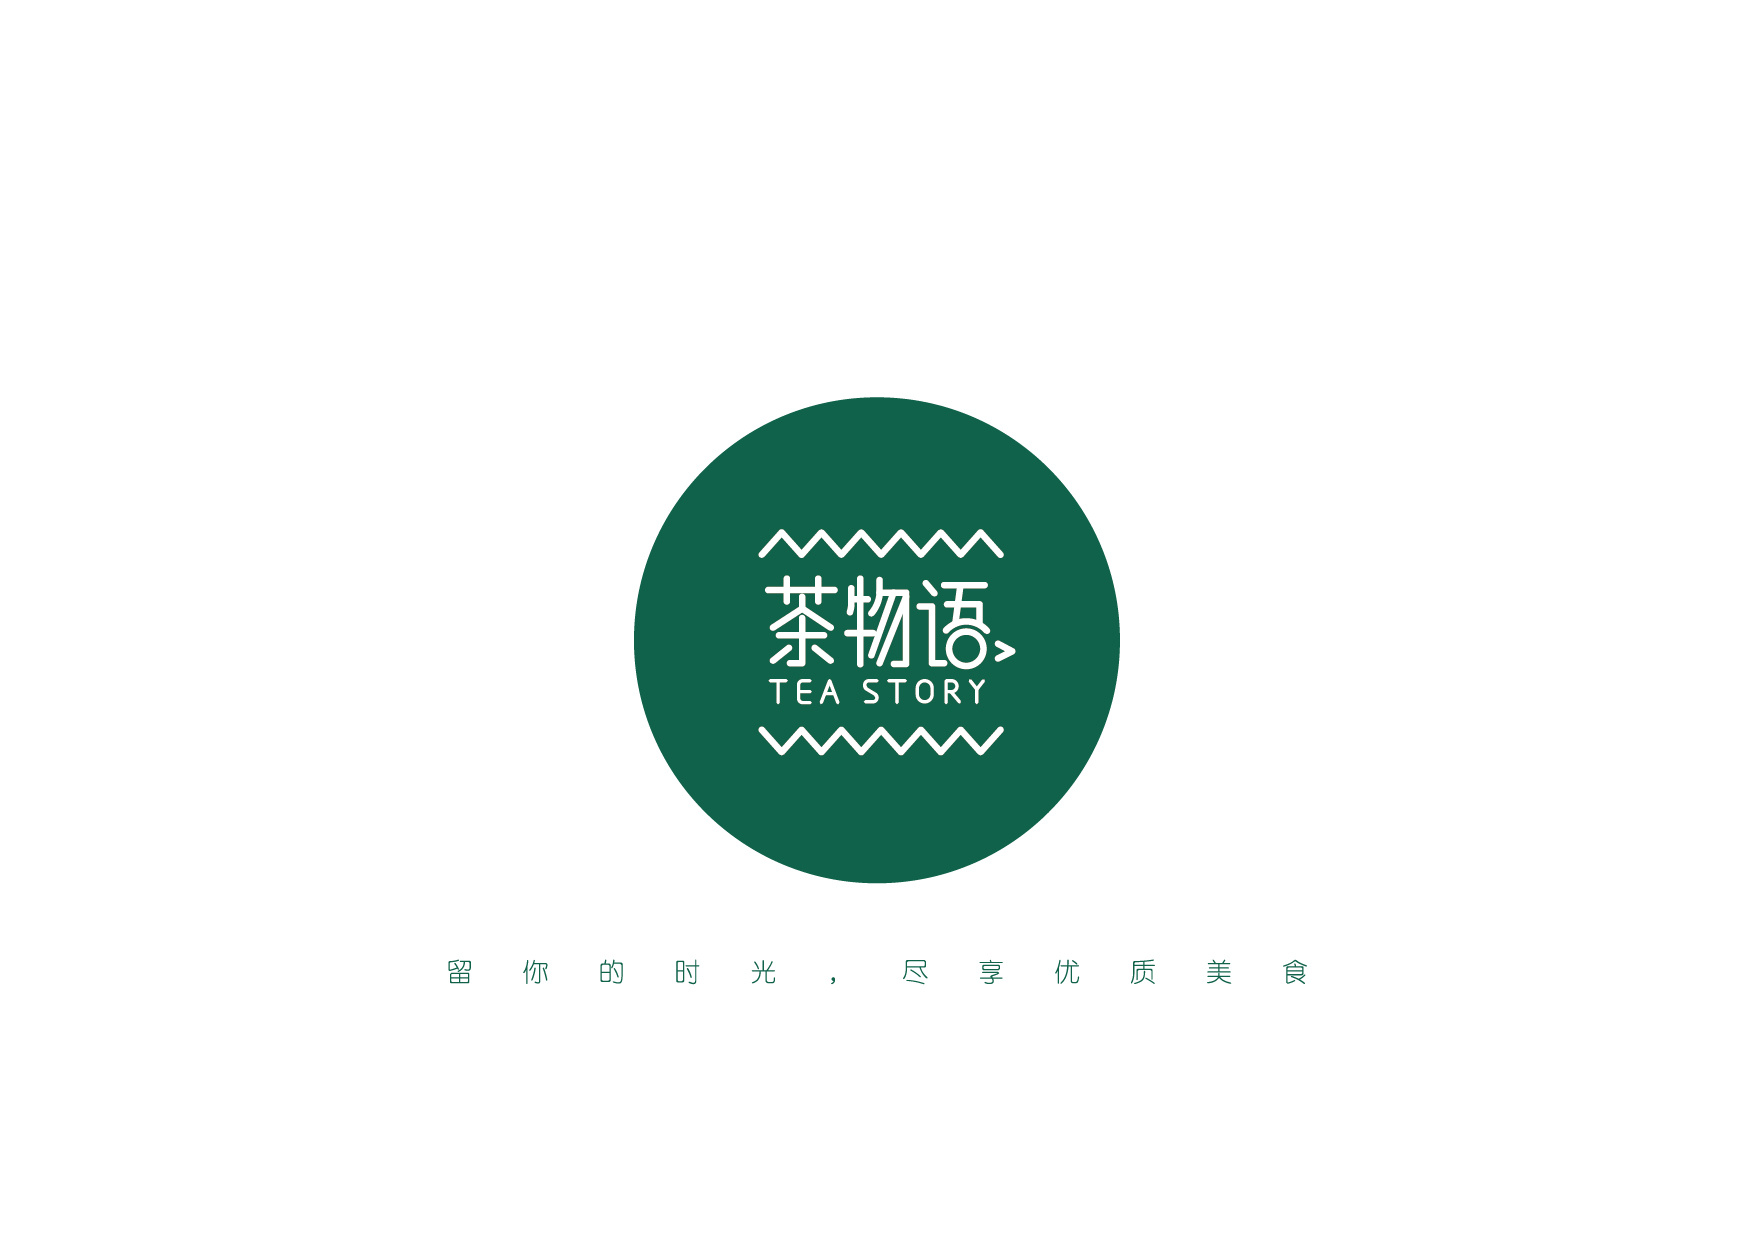 半岛物语logo图片